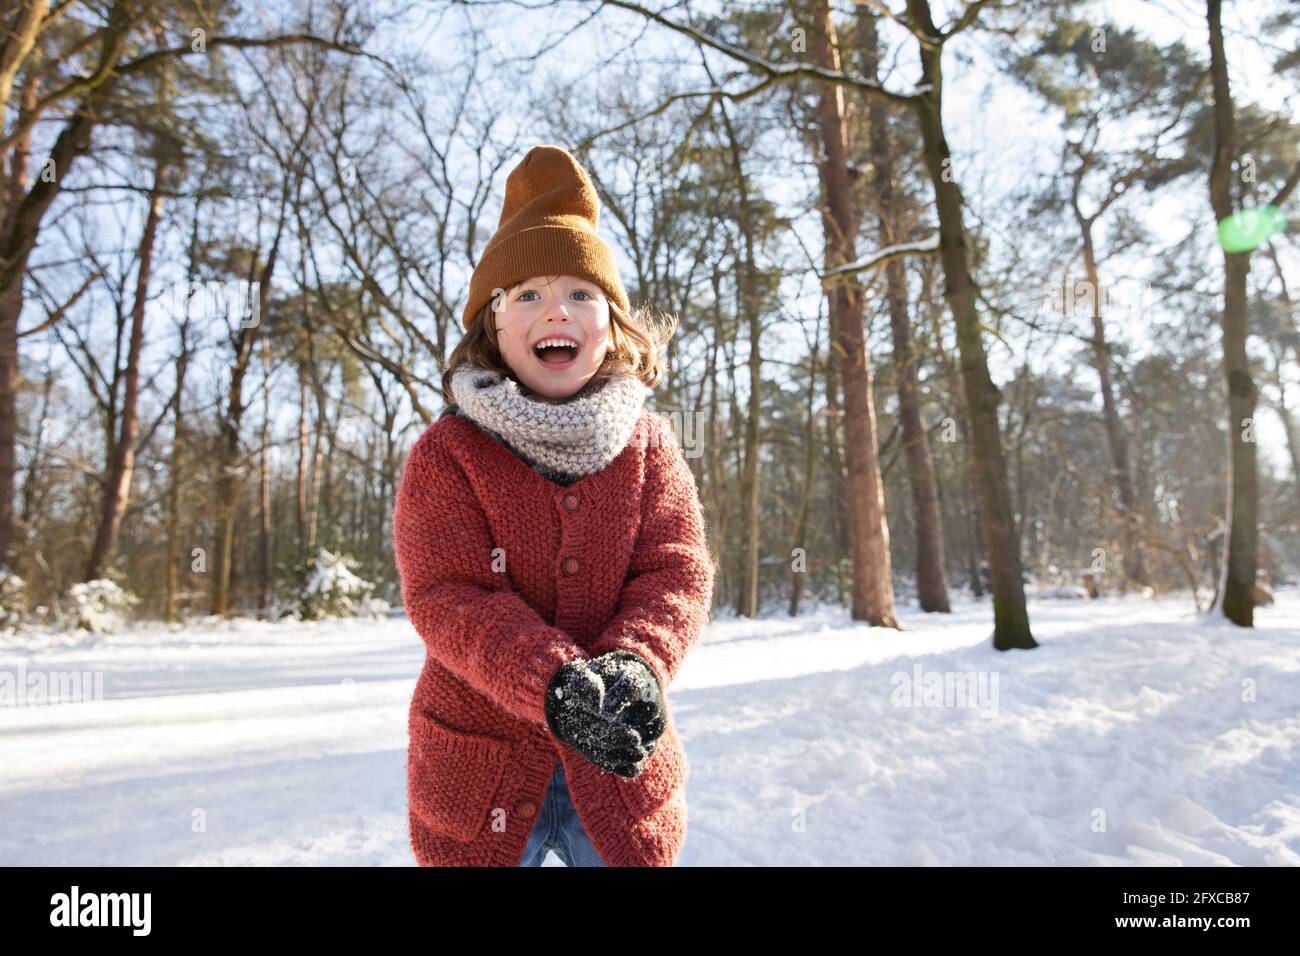 Curieux garçon dans des vêtements chauds jouant avec la neige pendant  l'hiver Photo Stock - Alamy